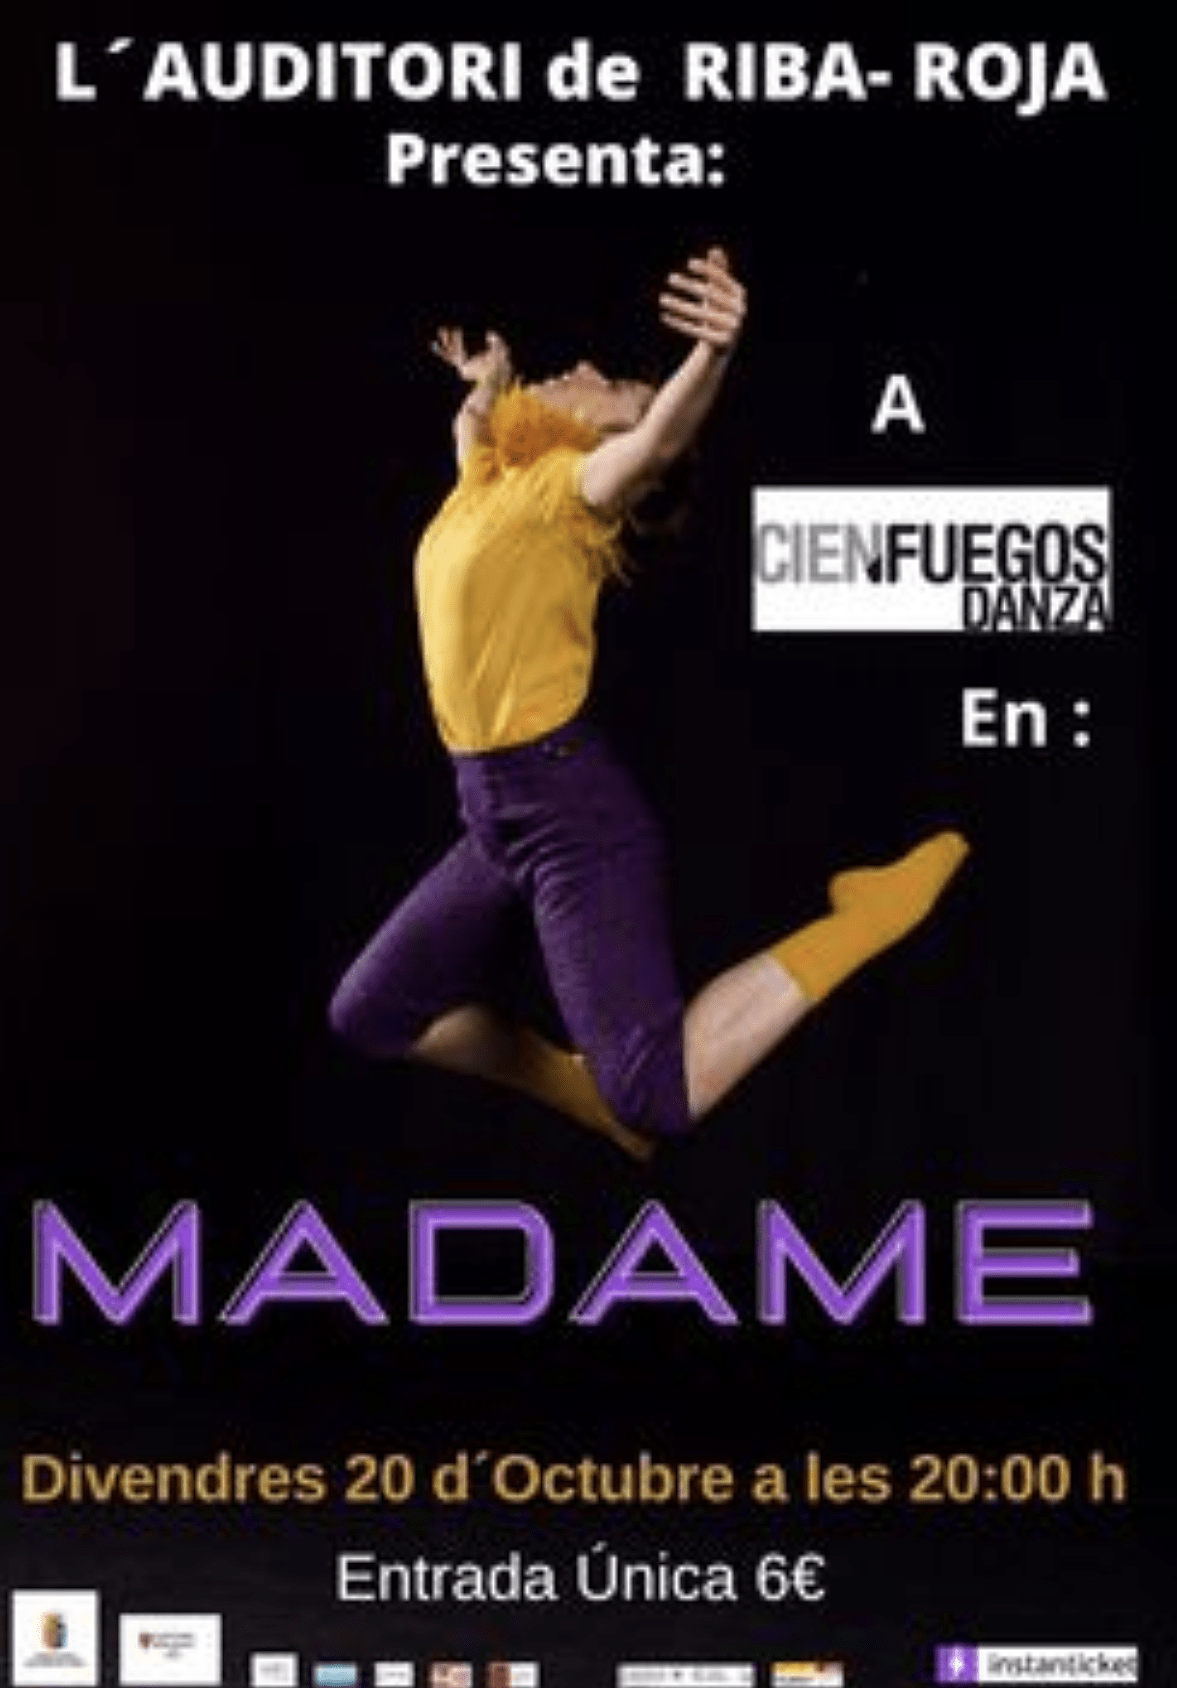 “MADAME” de CienFuegos Danza